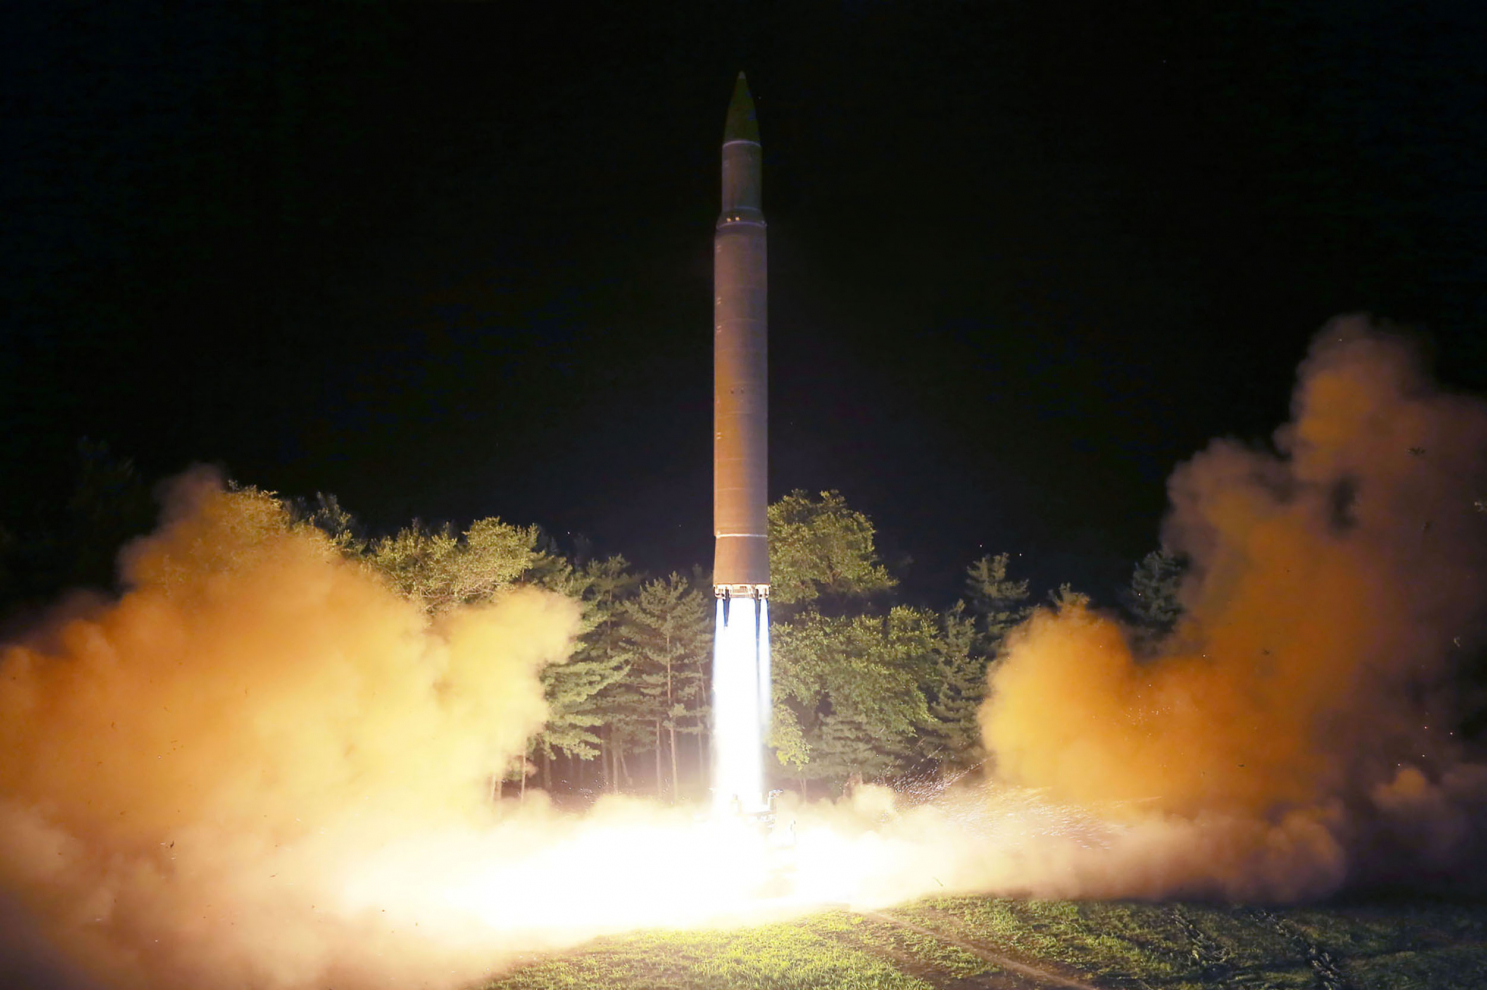 Hình ảnh do Thông tấn xã Trung ương Triều Tiên (KCNA) công bố vào ngày 29/7/2017 ghi lại cảnh phóng thử tên lửa đạn đạo xuyên lục địa (ICBM) Hwasong-14 của Triều Tiên tại một địa điểm không được tiết lộ. (Ảnh: STR/AFP/Getty Images)